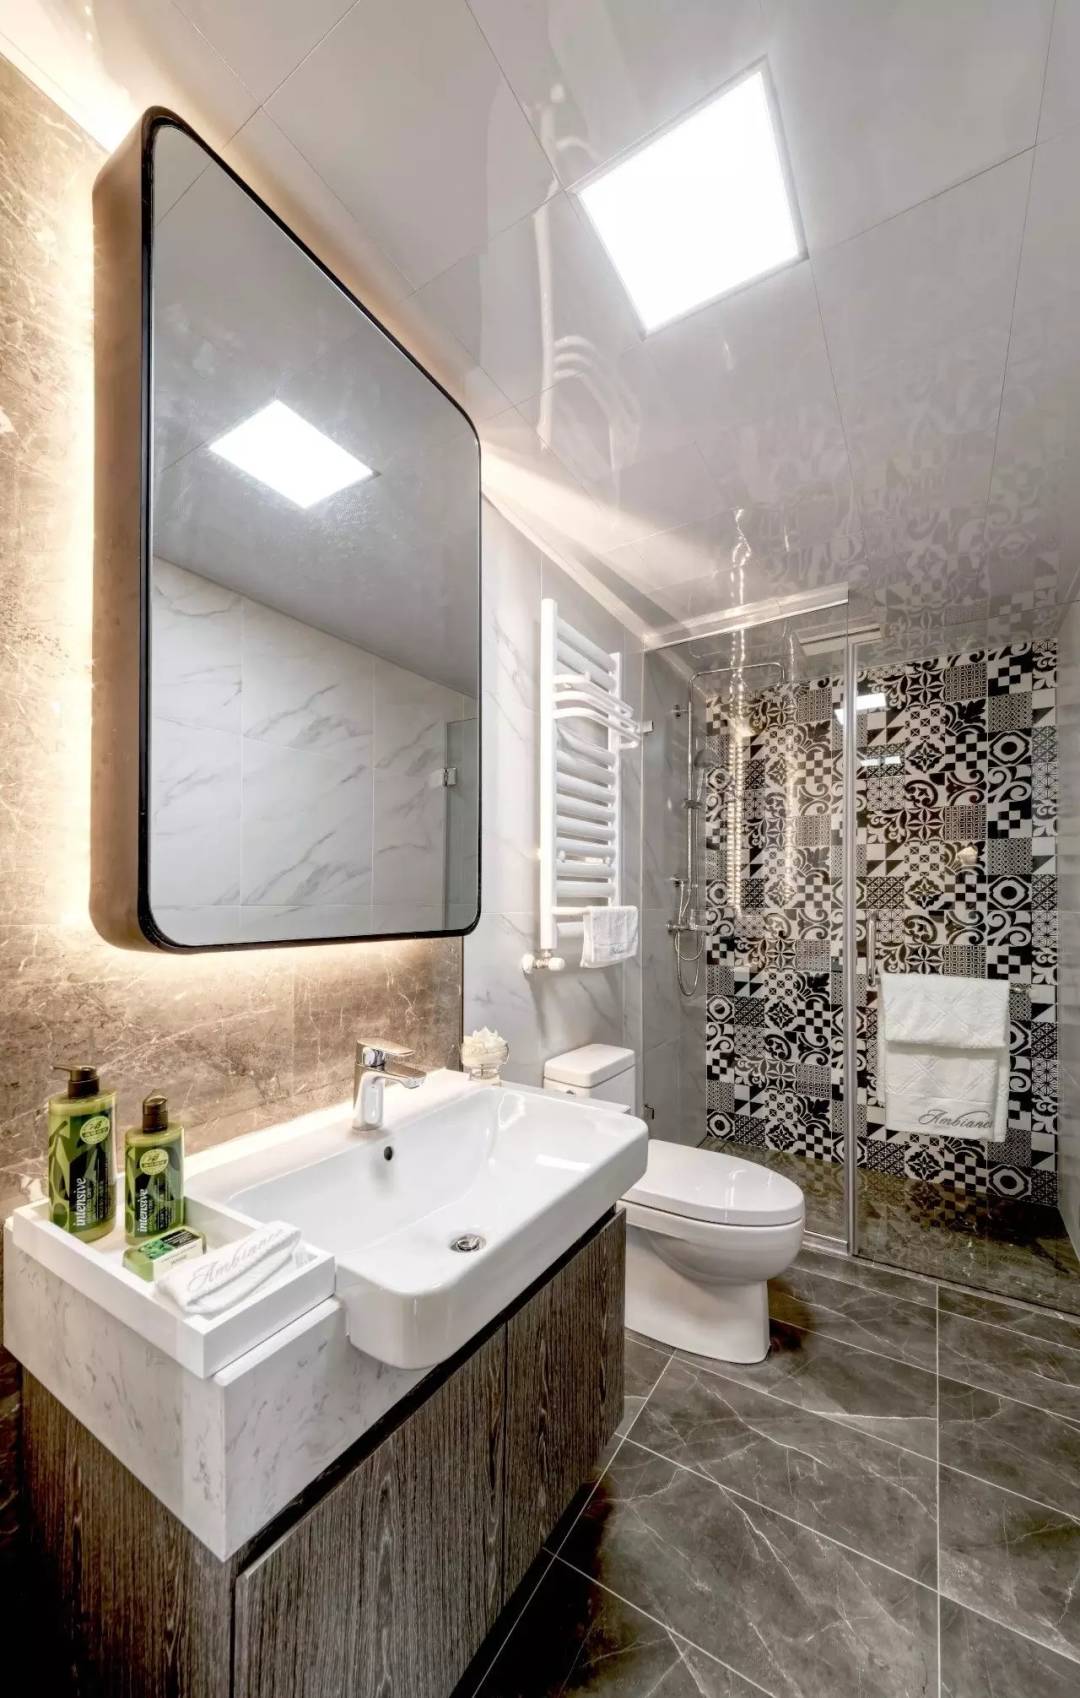 卫生间使用照明设计搭配出富有前卫气息的卫浴氛围，局部采用玻璃进行干湿分离。